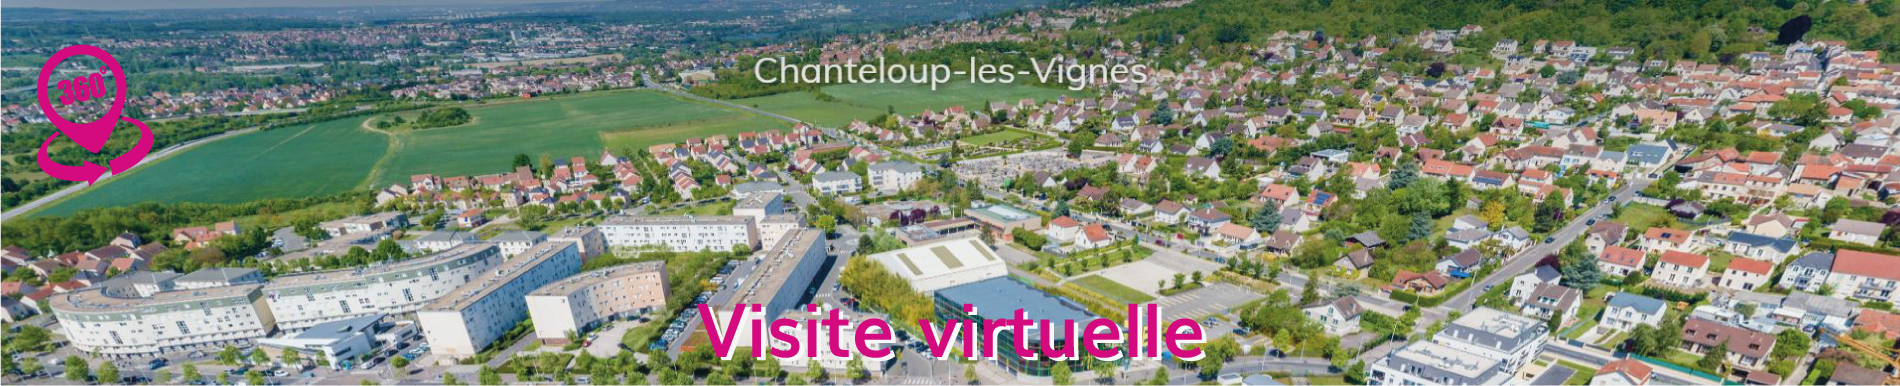 Visite virtuelle Chanteloup